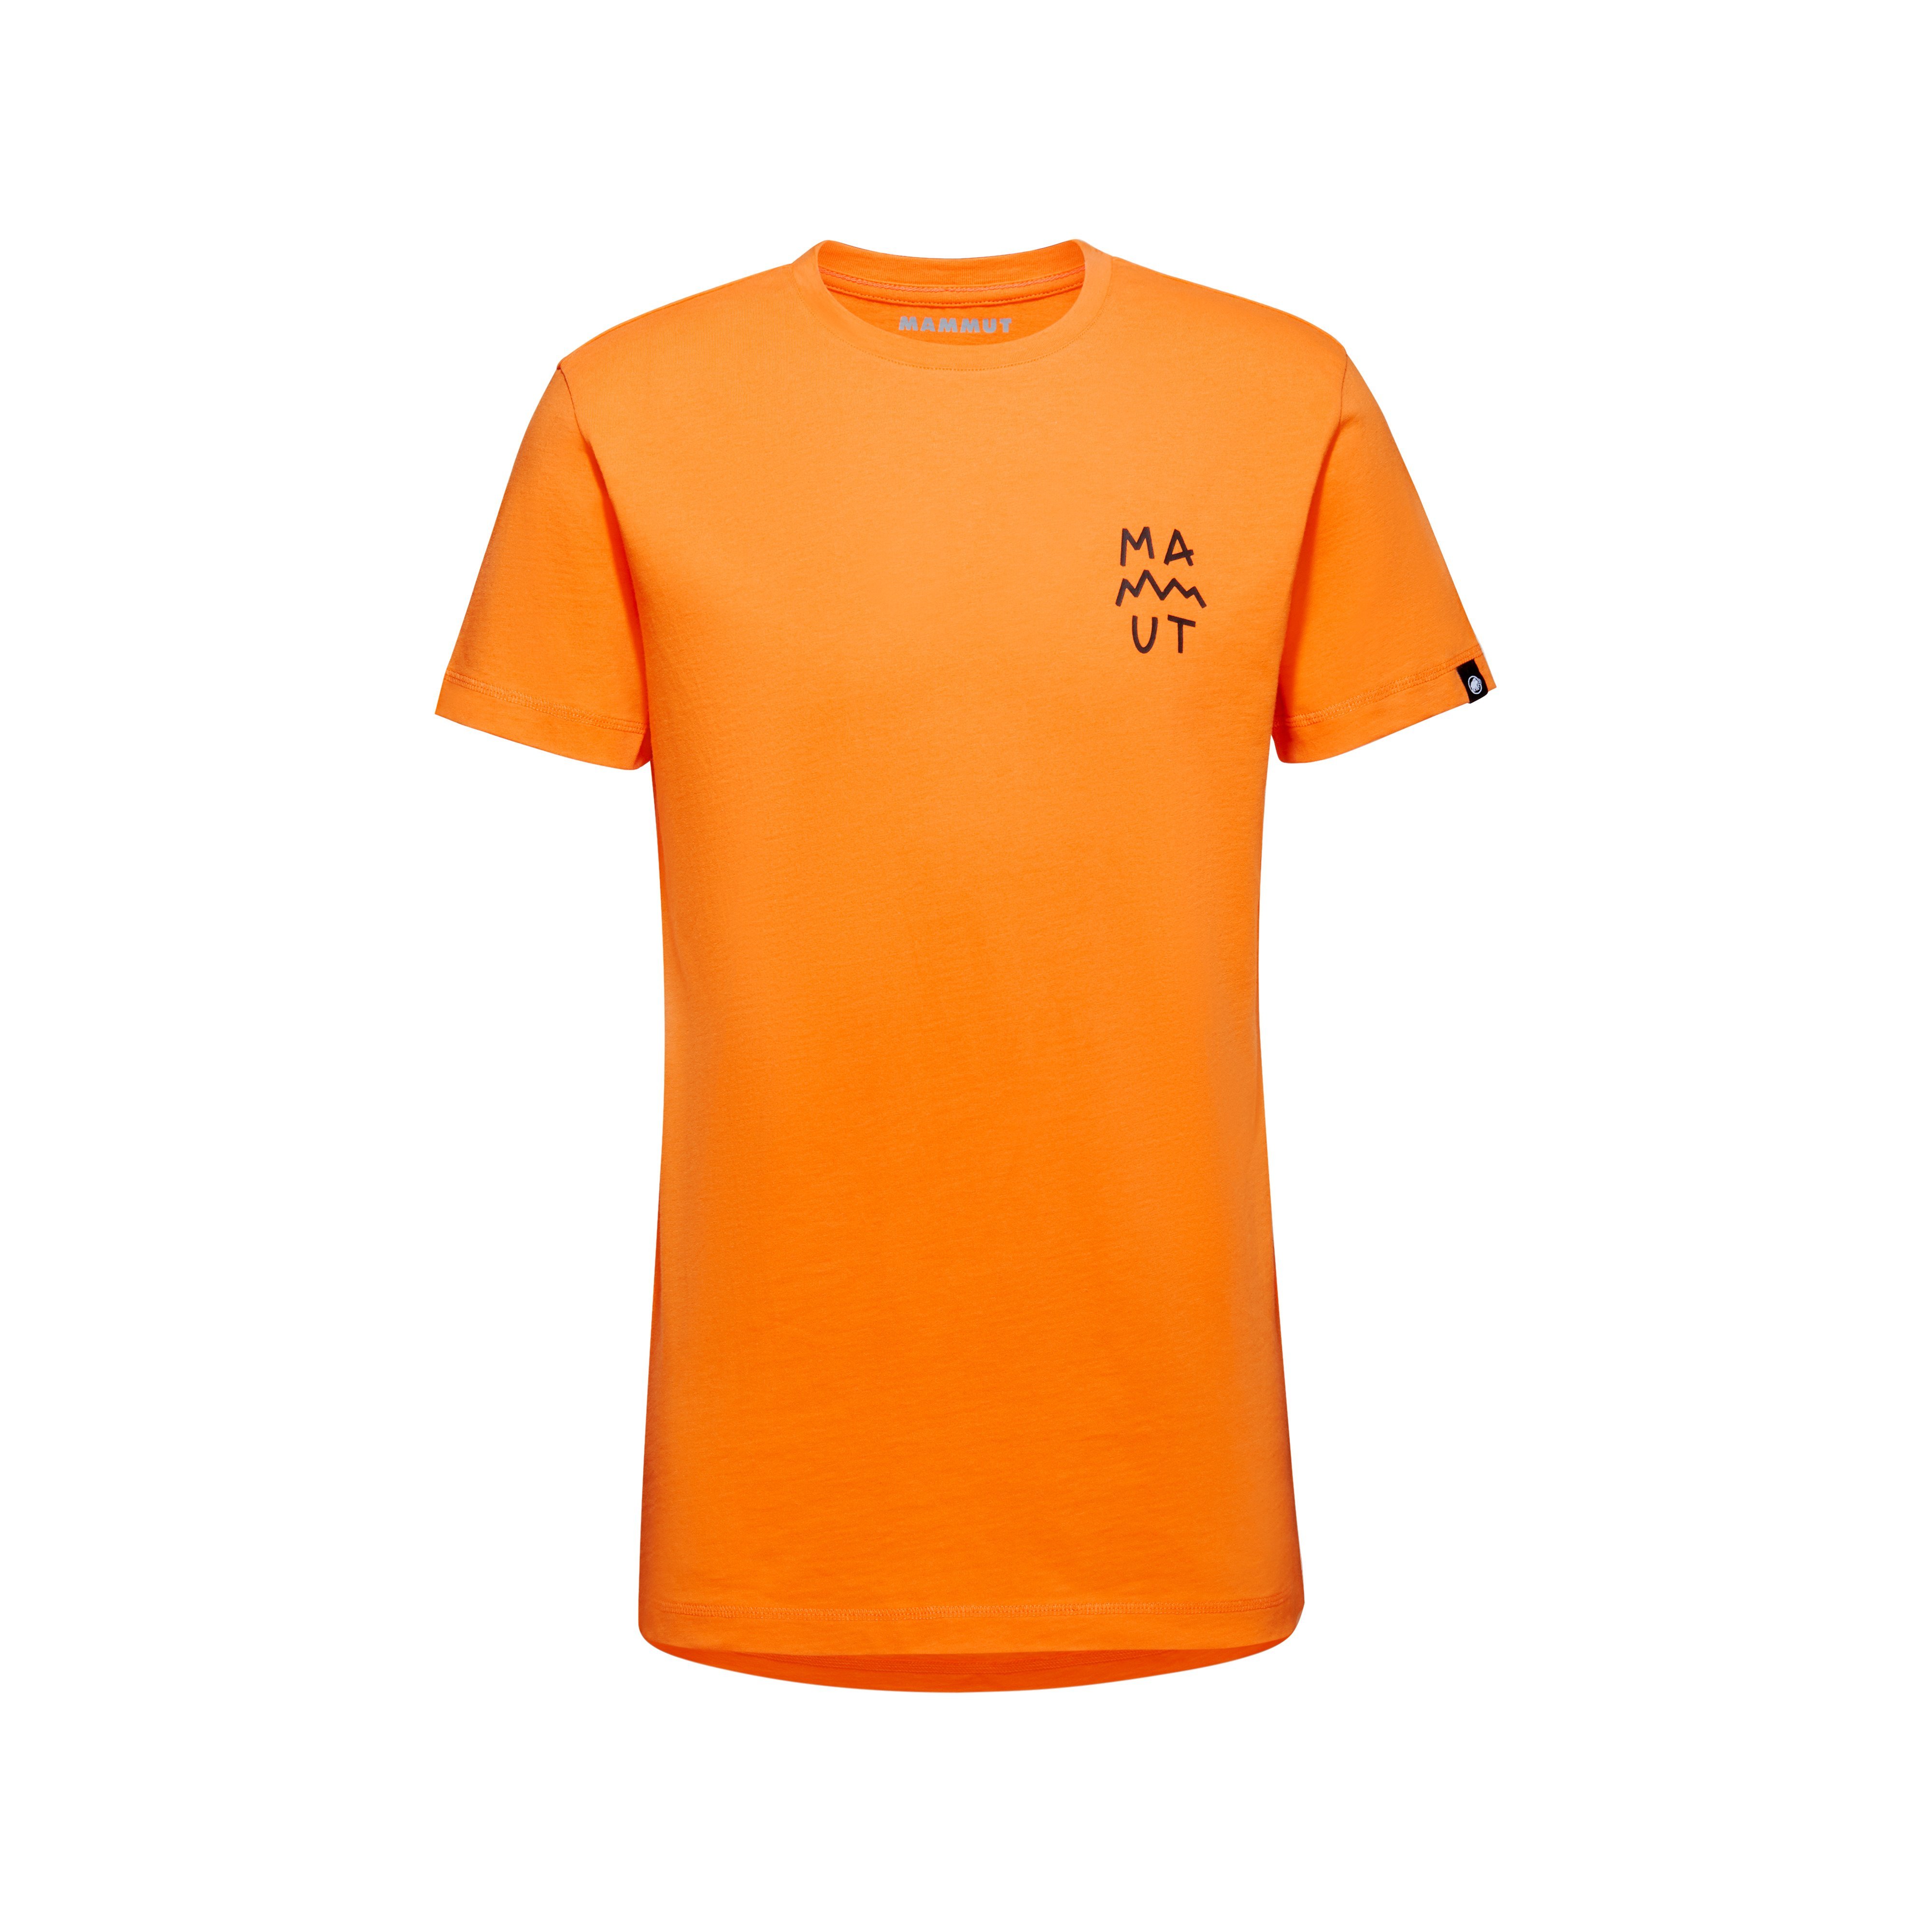 Massone T-Shirt Men Lettering - dark tangerine, S product image